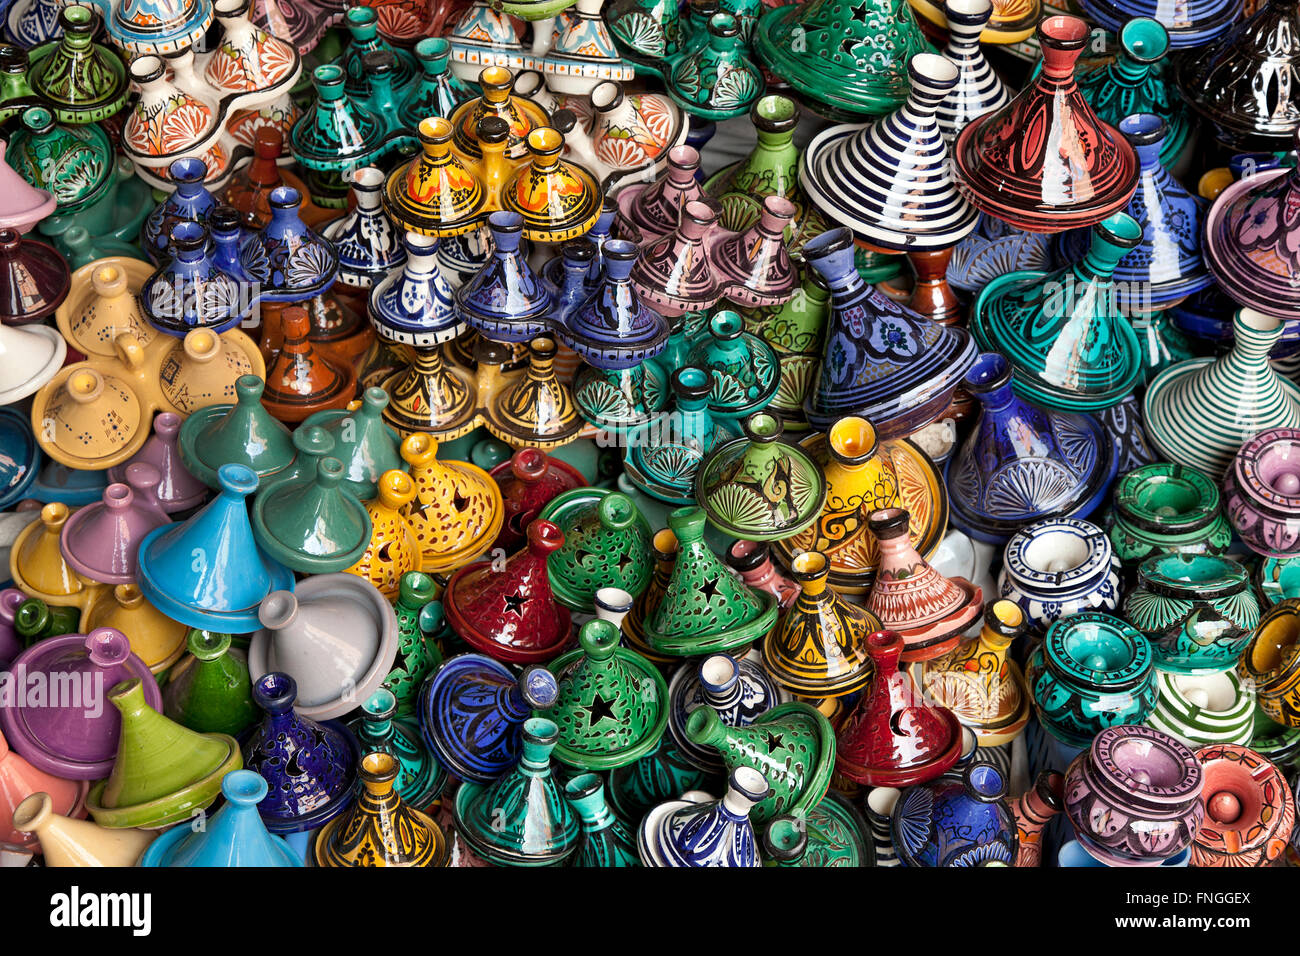 Marktstand in der Medina mit unterschiedlichsten Souvenir Tagines, Marrakesch, Marokko Stockfoto